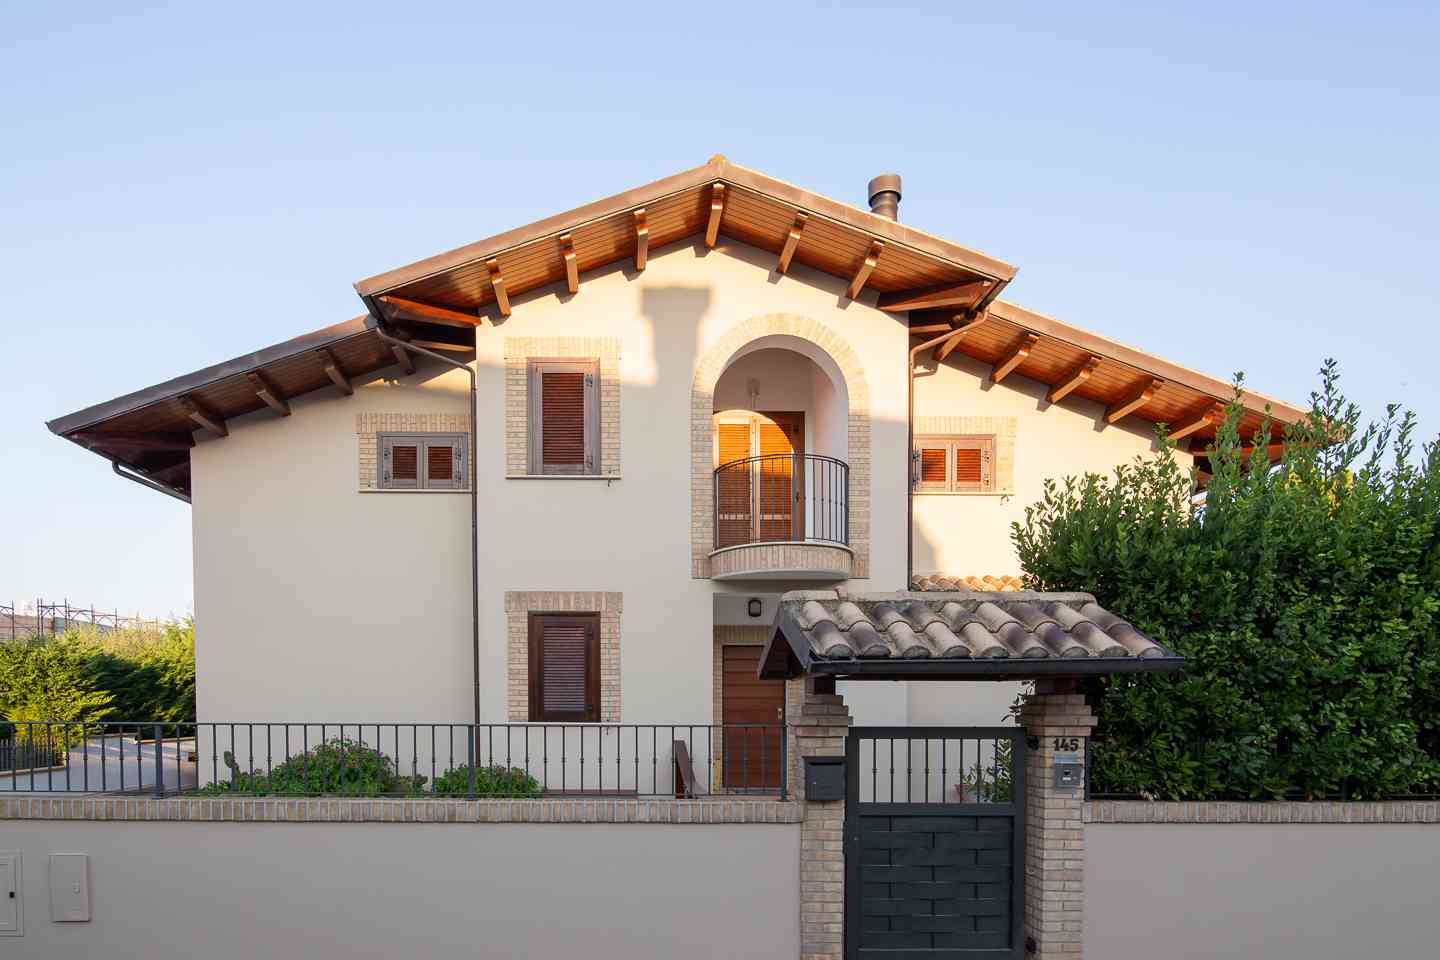 Casa indipendente Casa indipendente in vendita Collecorvino (PE), Villa Pini - Collecorvino - EUR 574.653 430 small